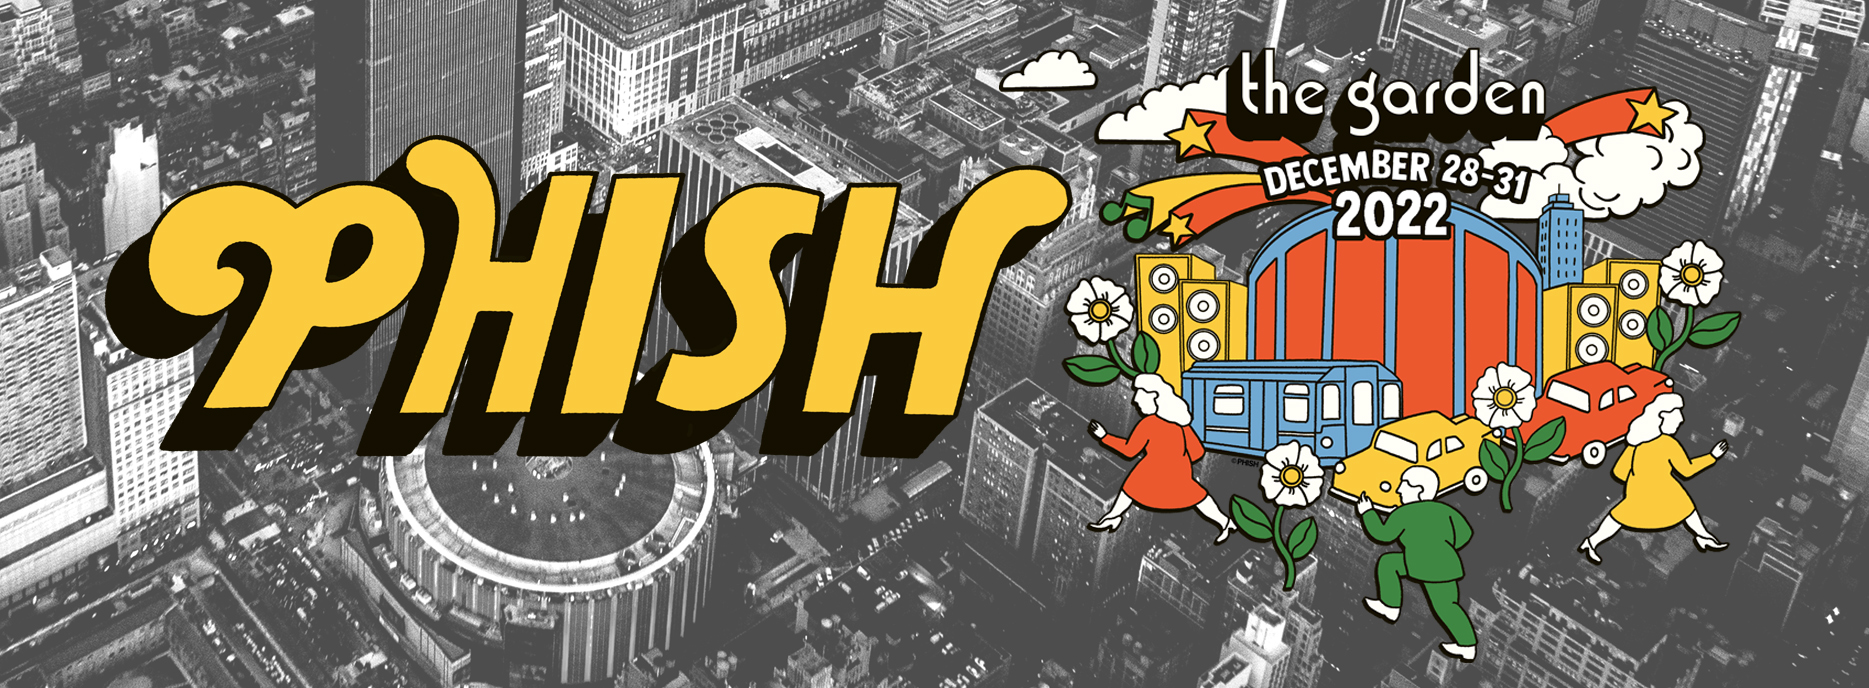 Phish New Year’s Run 2022 Announced – Phish